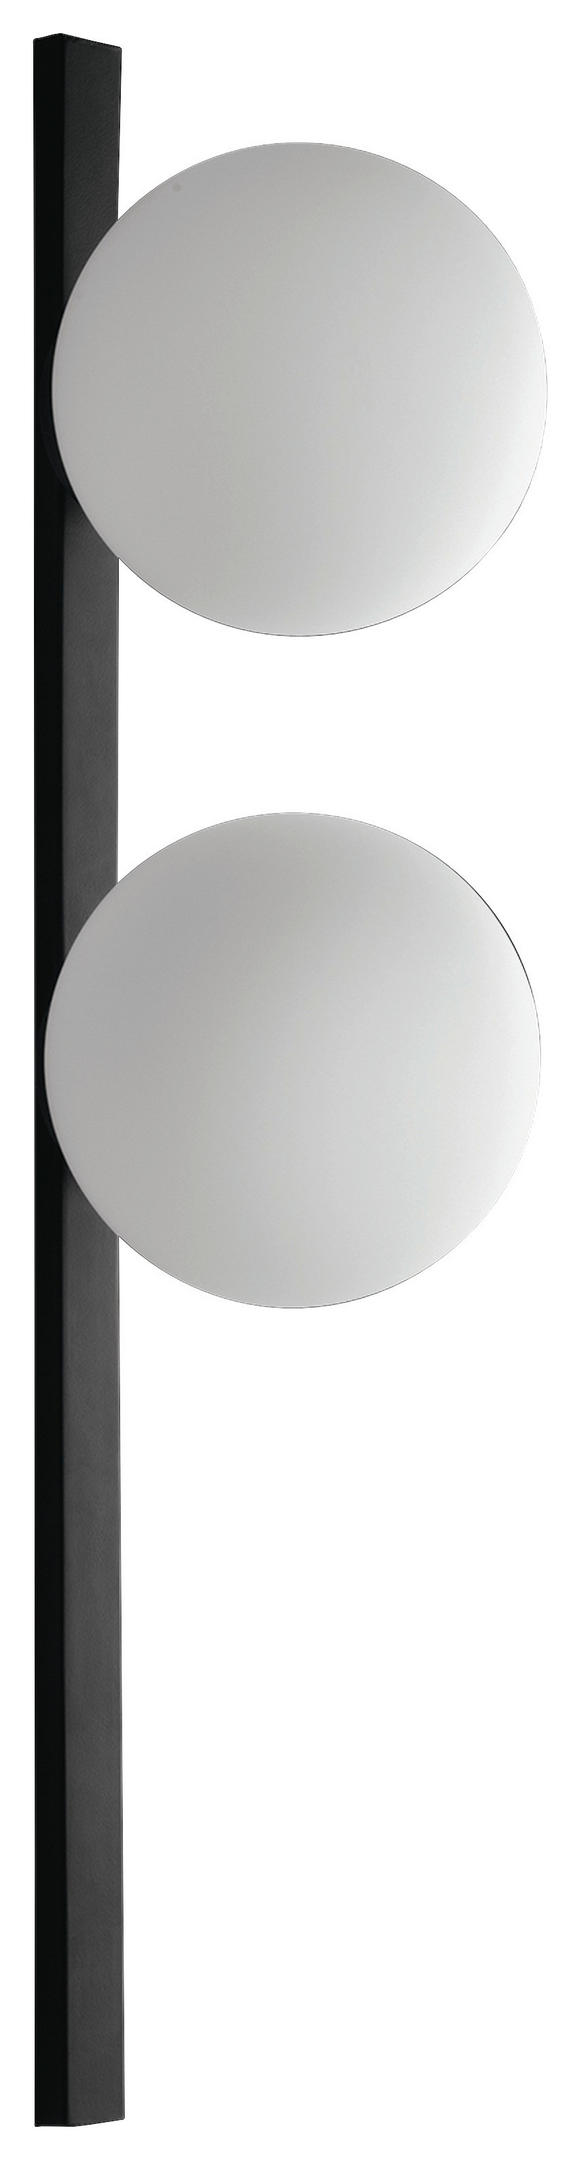 WANDLEUCHTE Enoire 16,5/60 cm   - Schwarz/Weiß, Basics, Glas/Metall (16,5/60cm)